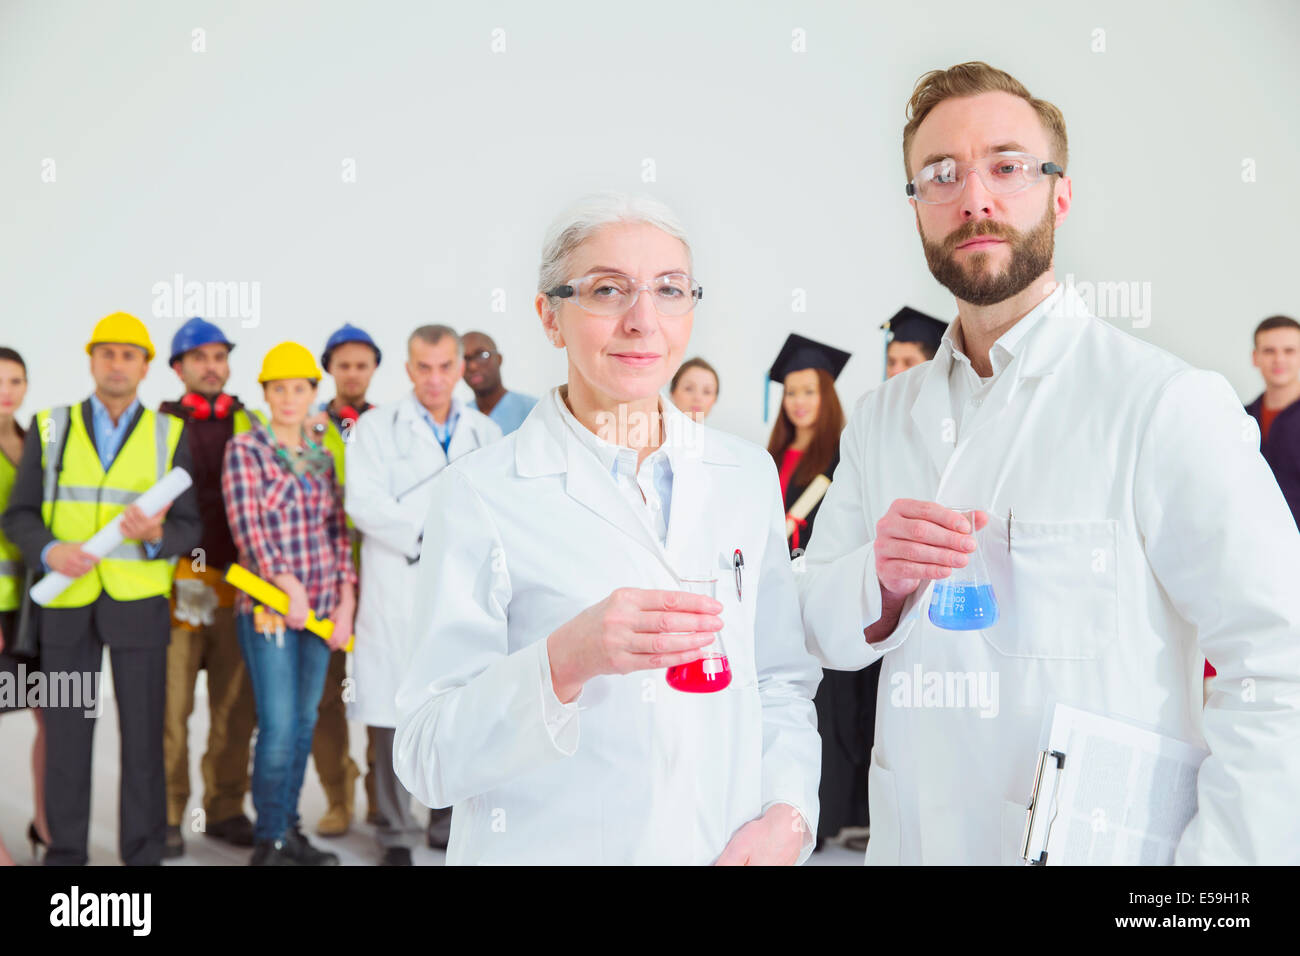 Retrato de los científicos con los trabajadores en segundo plano. Foto de stock